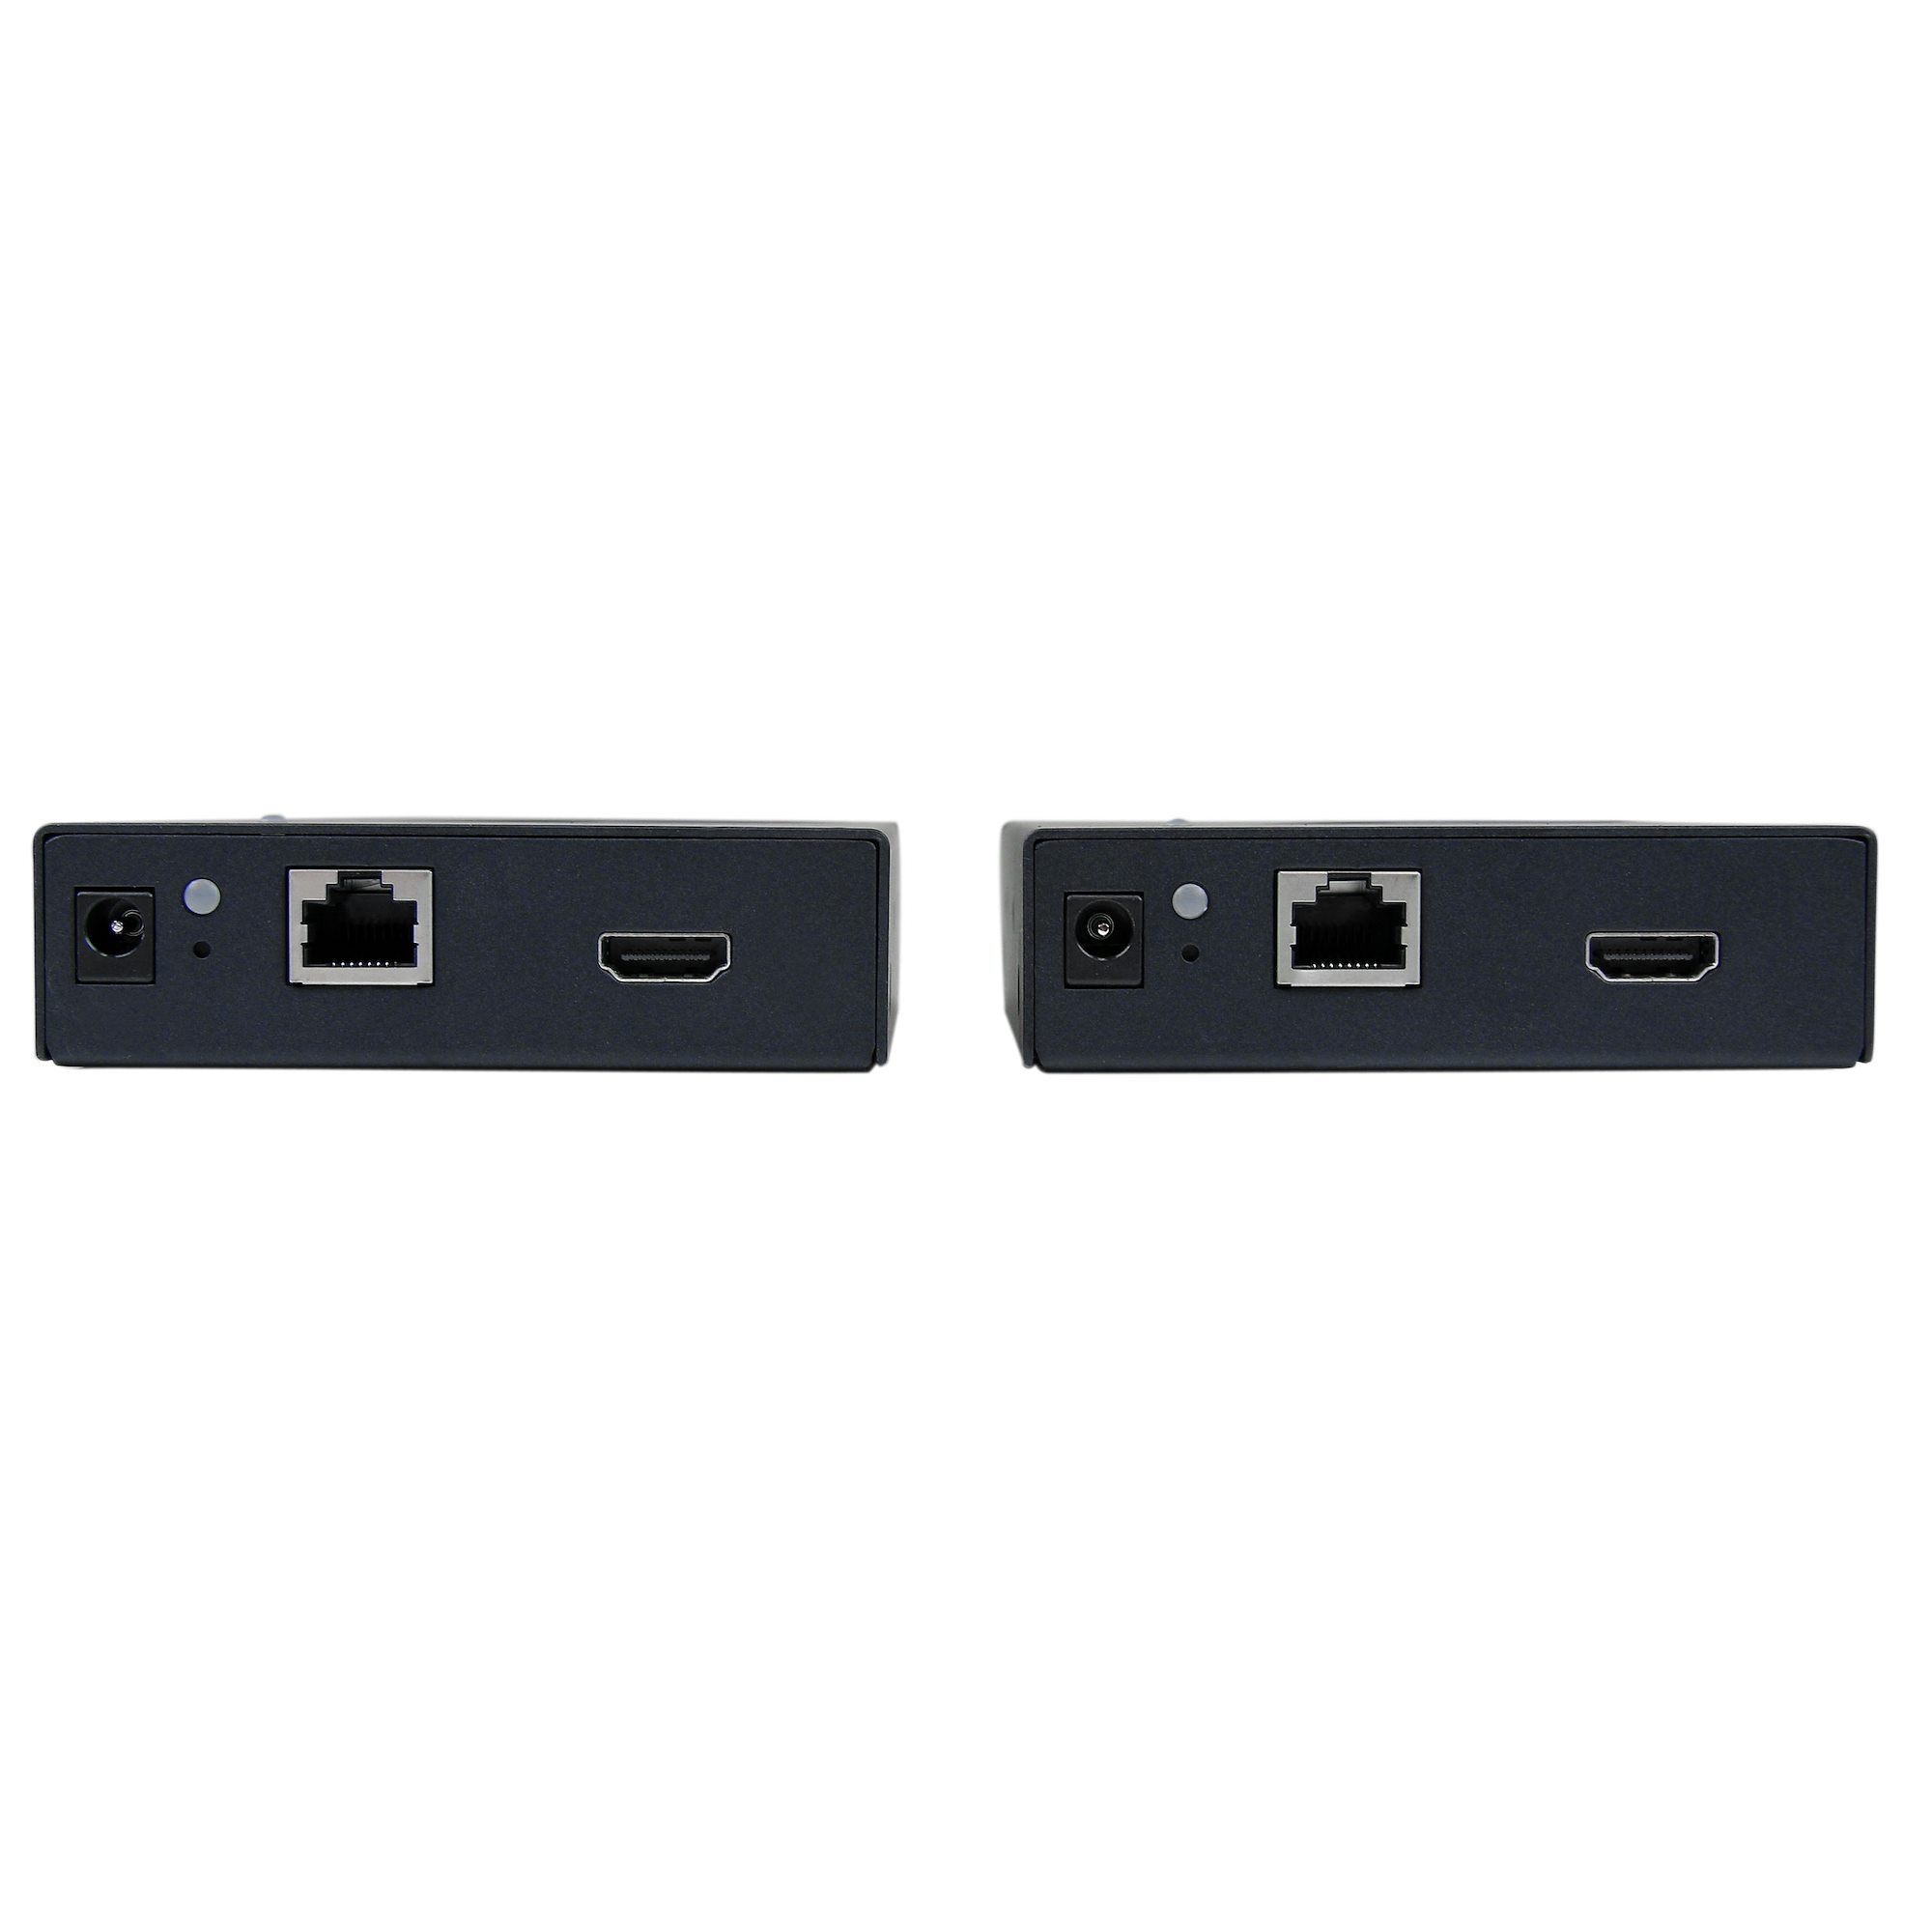 ナチュラルネイビー IP対応HDMIエクステンダー 送受信機セット ビデオウォールシステム対応 1080p解像度 HDMI  LAN 変